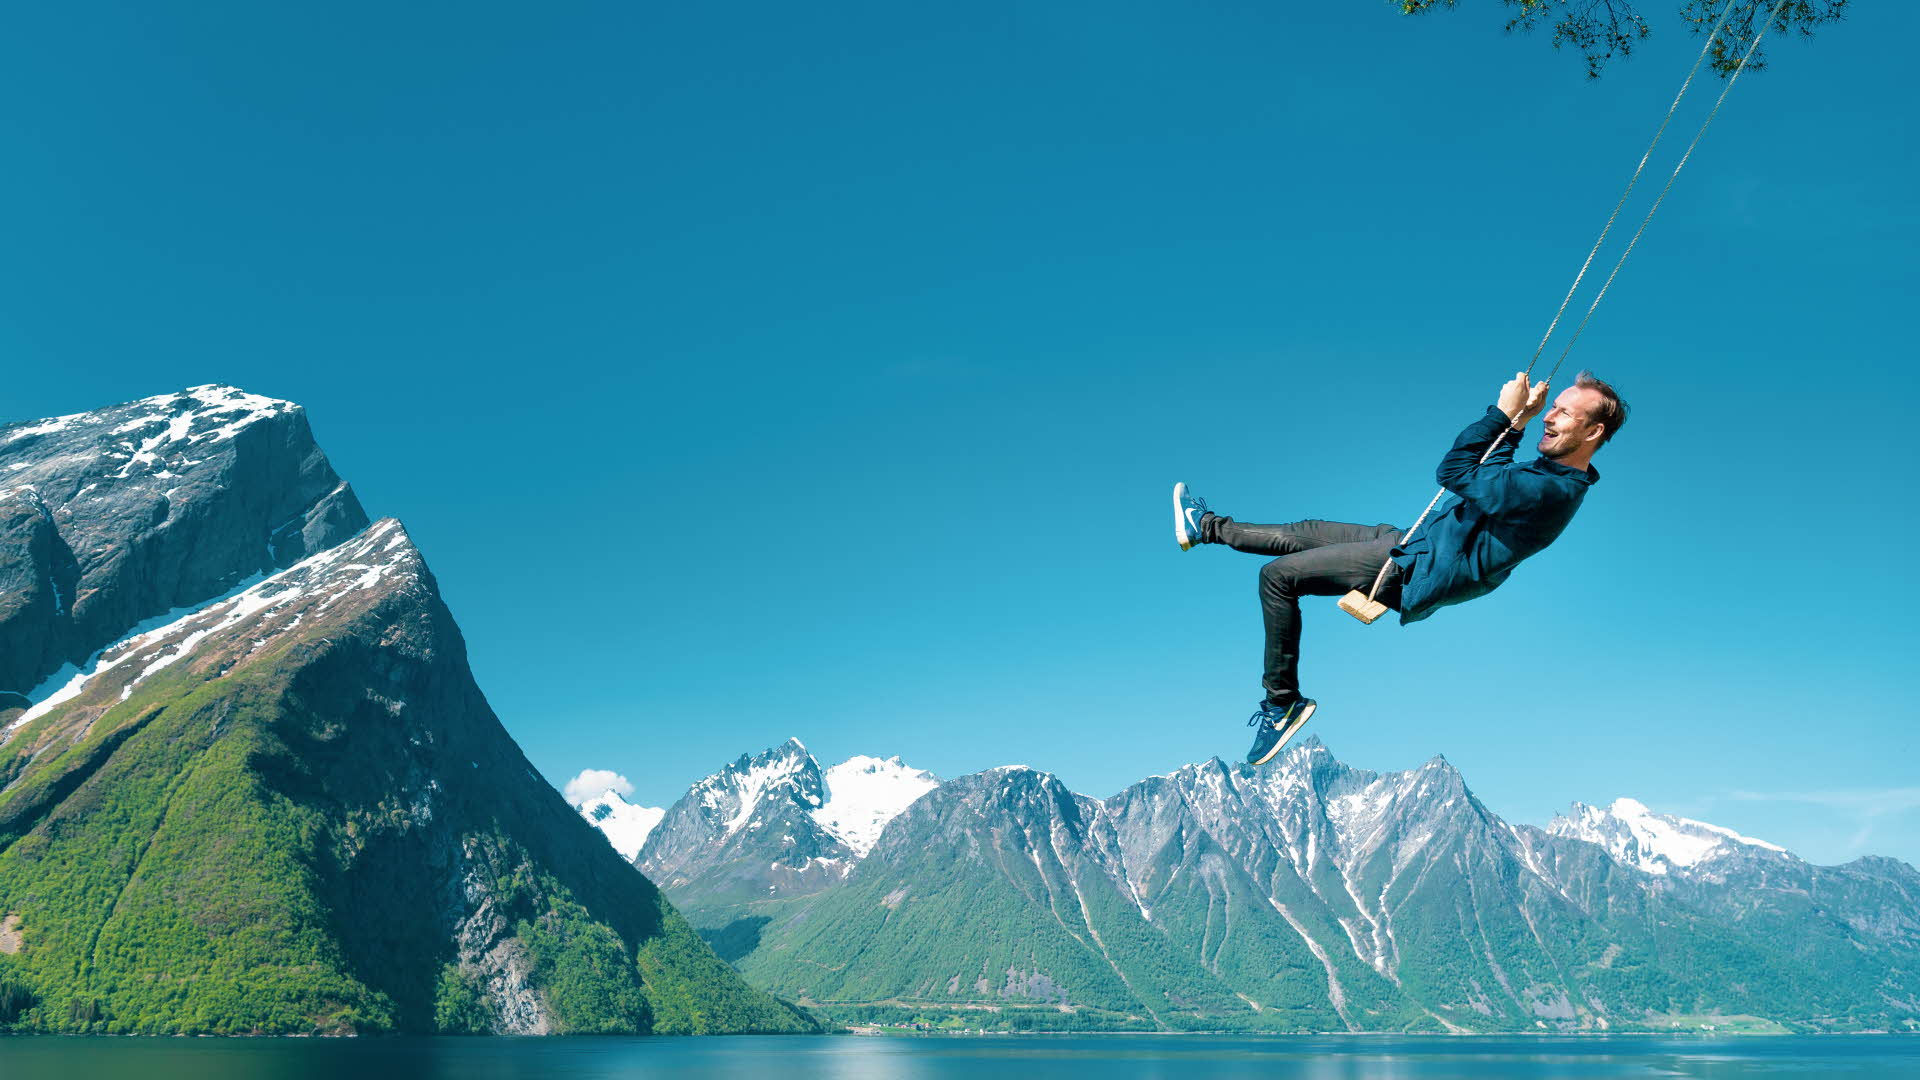 ヨルンフィヨルド(Hjorondfjord)のブランコを楽しむ男性